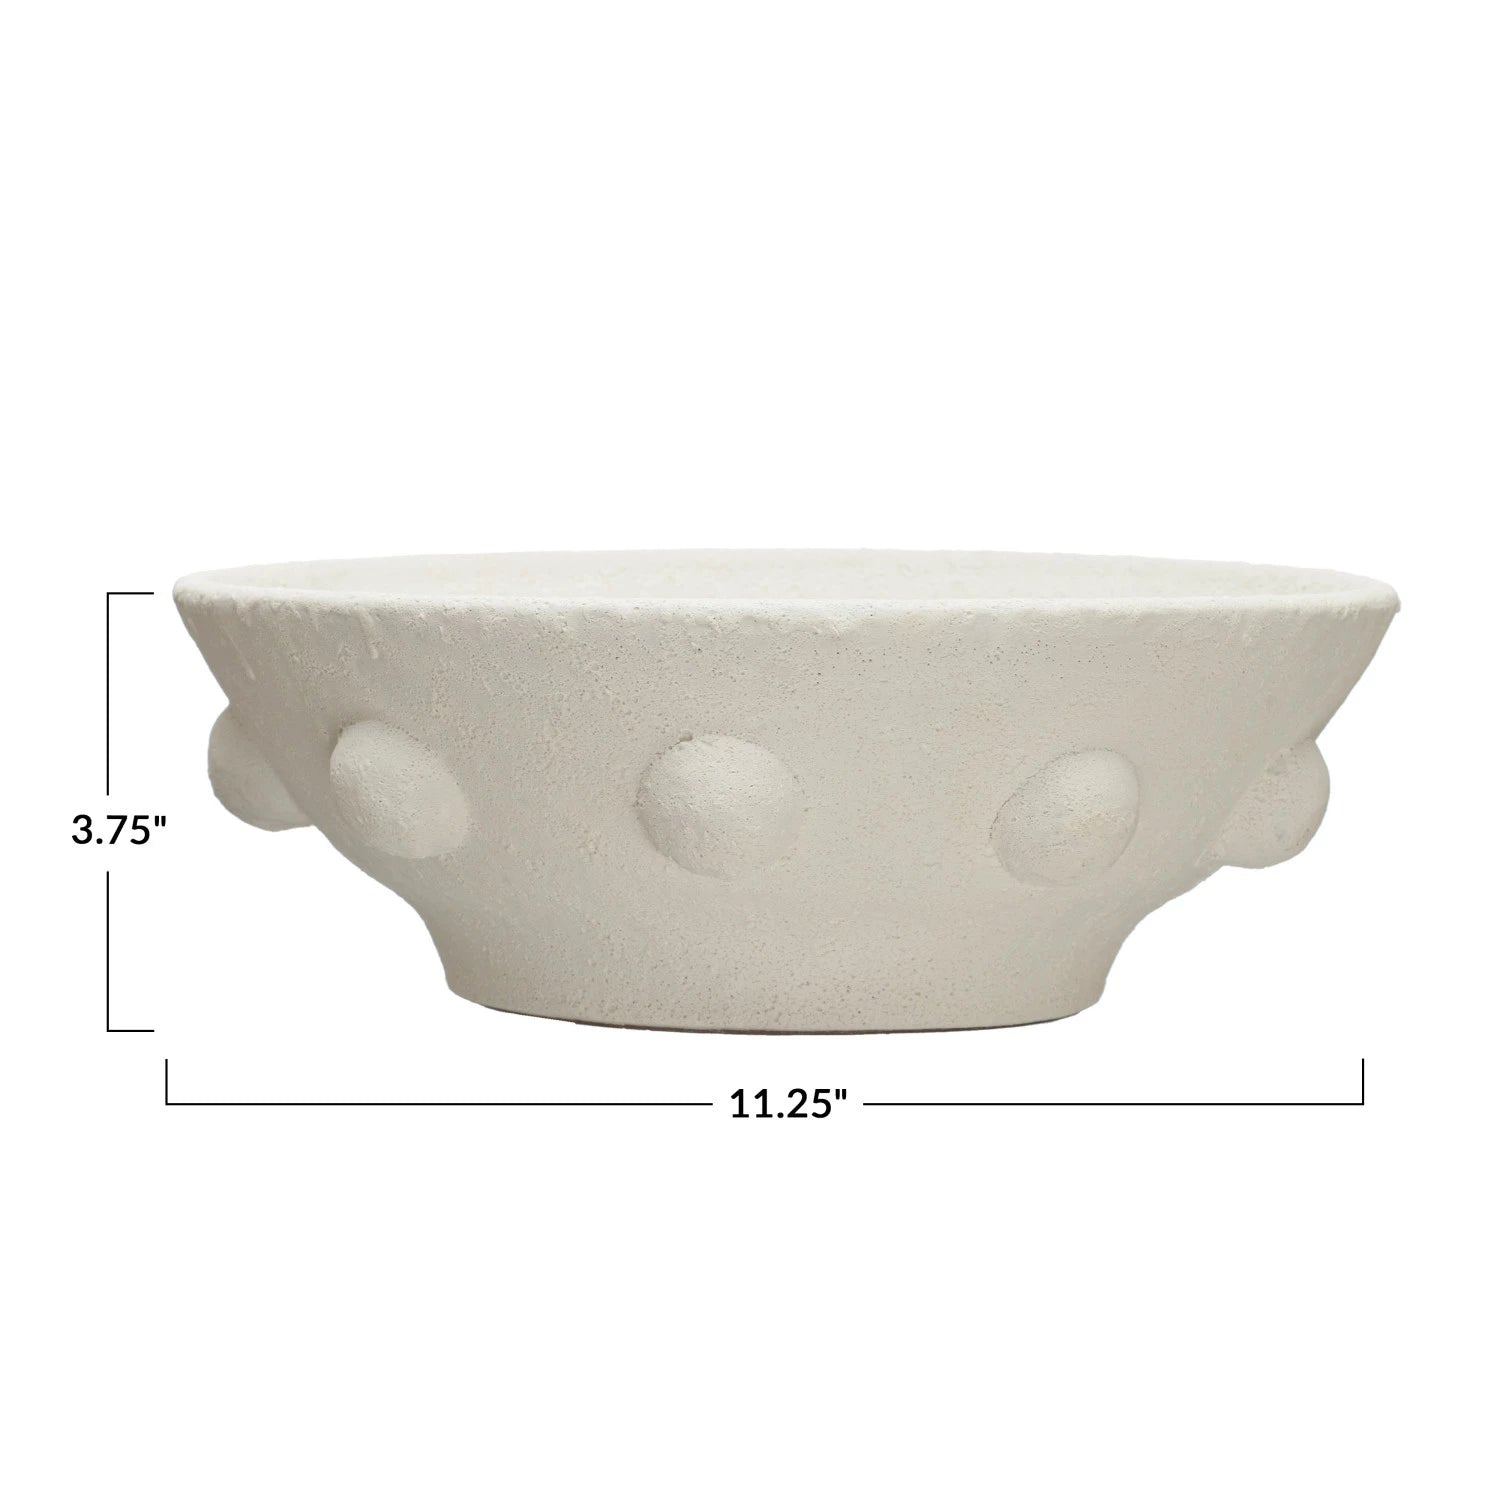 Decorative Coarse Terra-cotta Bowl w/ Raised Dots, Volcano Finish, White